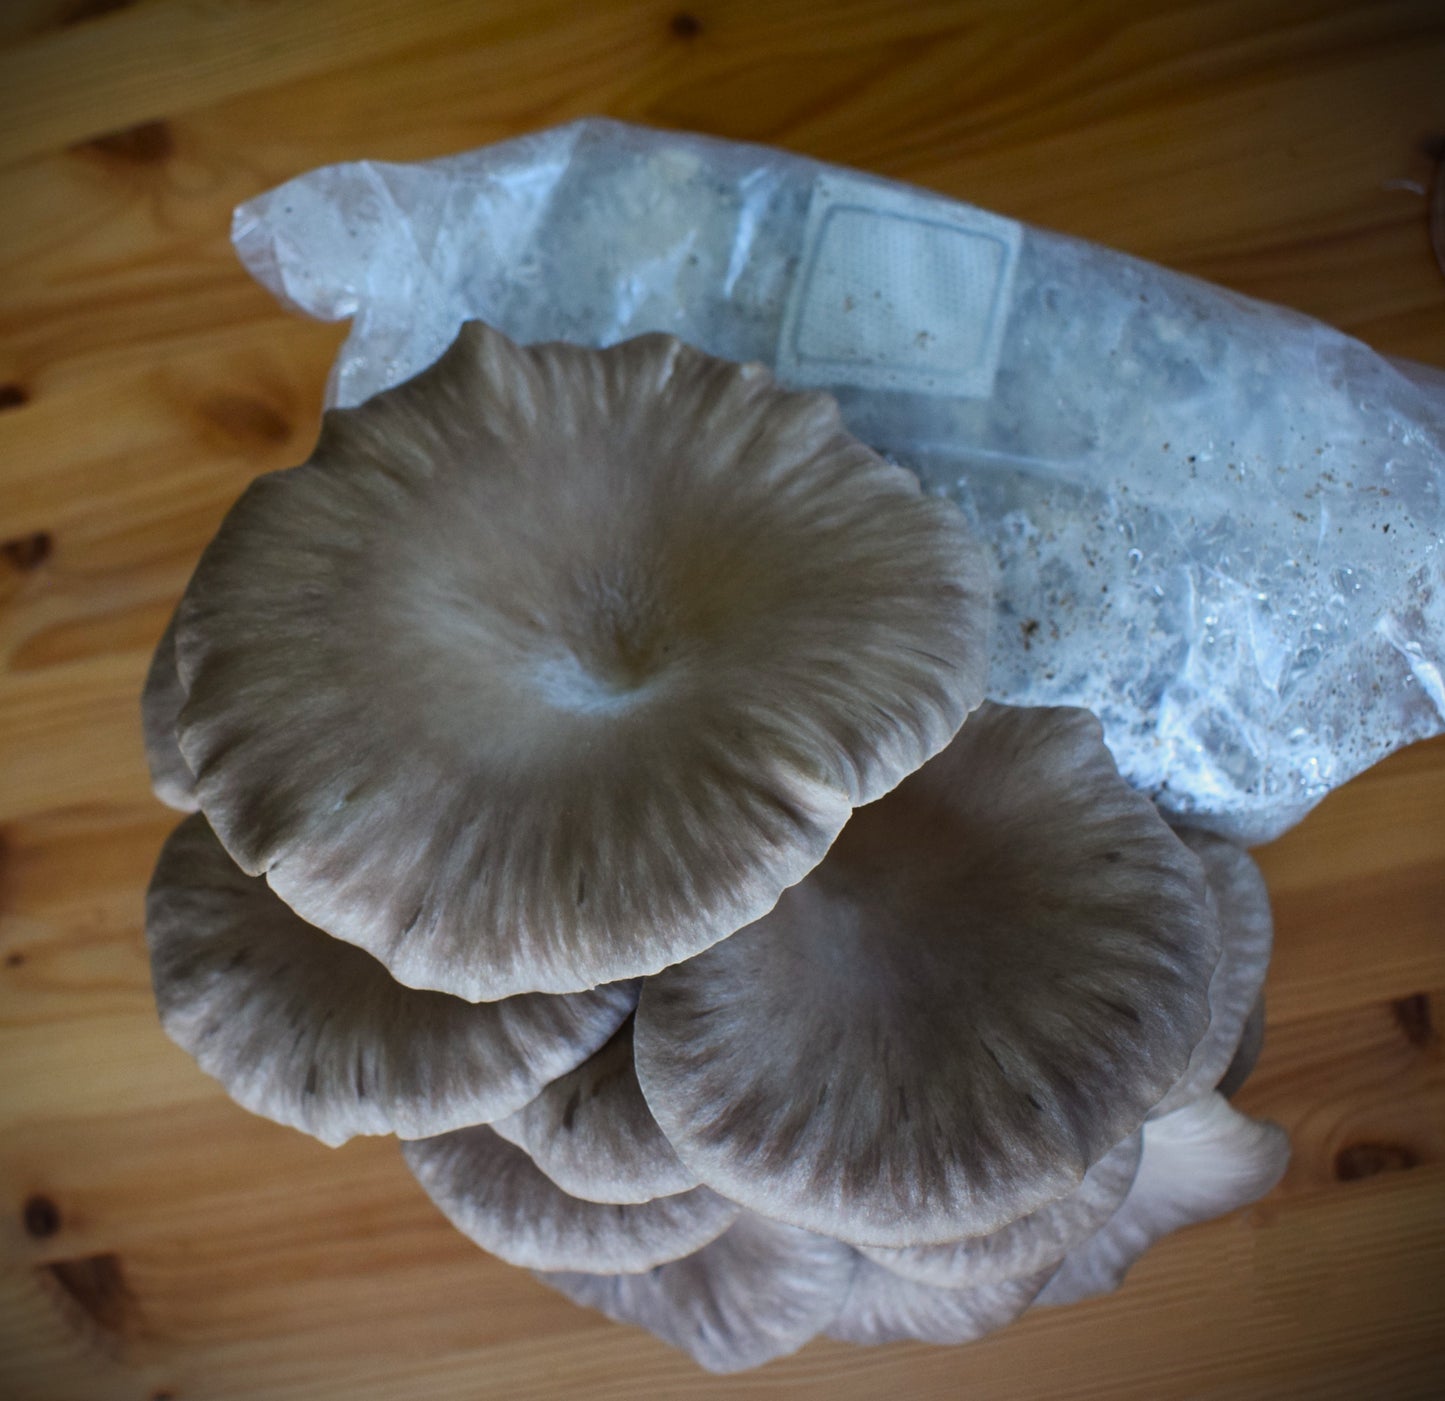 black pearl oyster mushroom grow kit